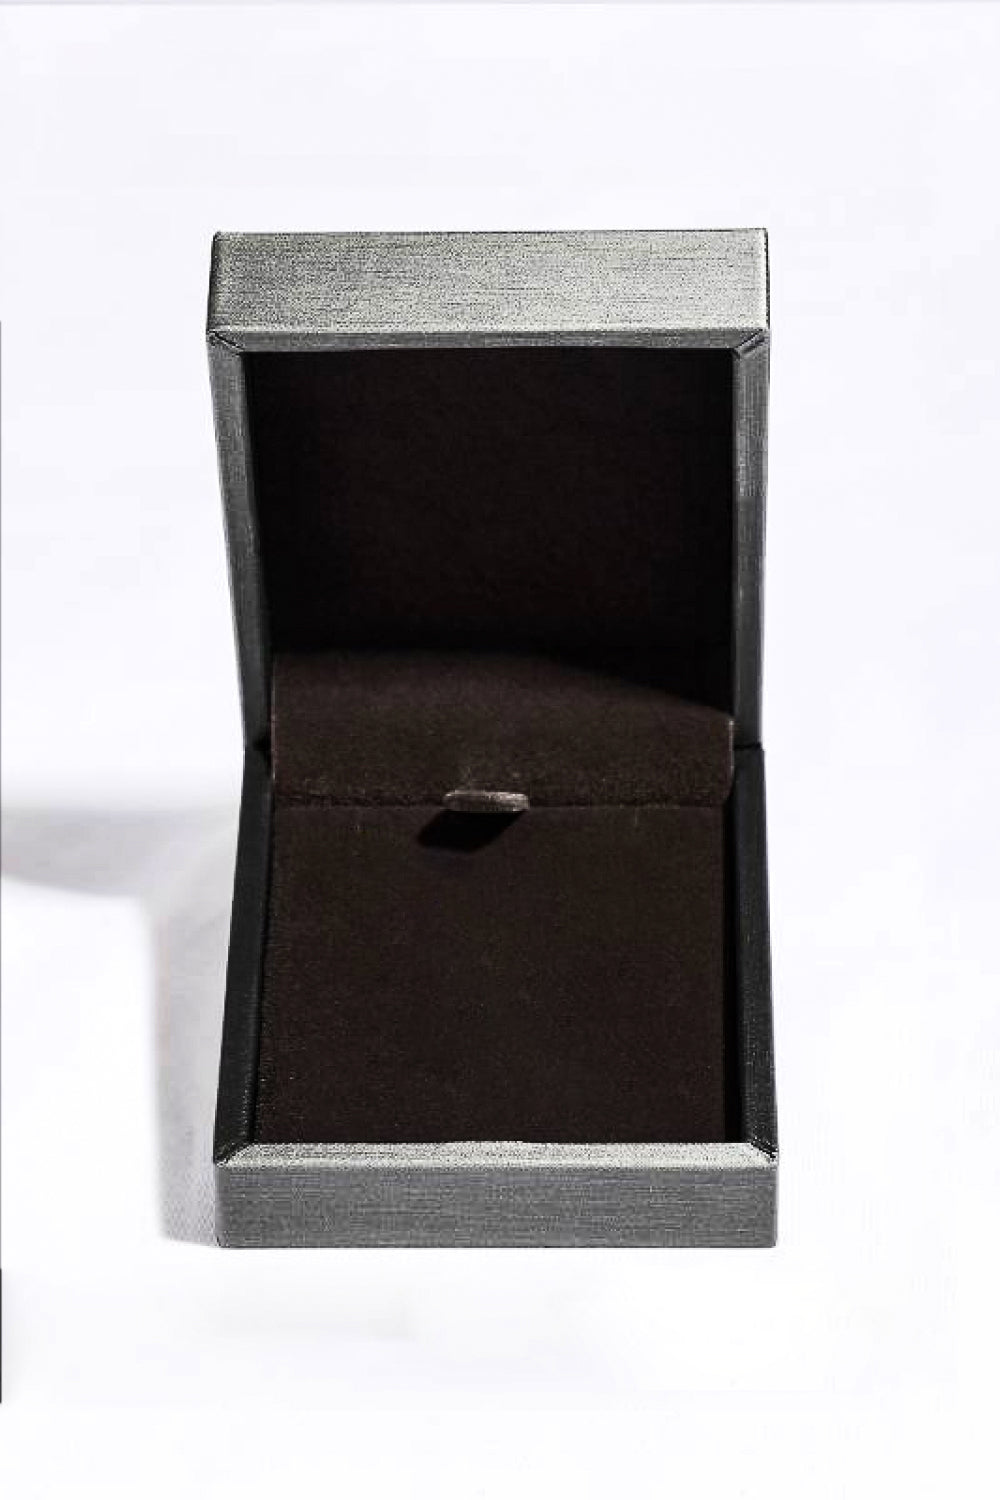 Teardrop Shape 925 Sterling Silver Zircon Pendant Necklace